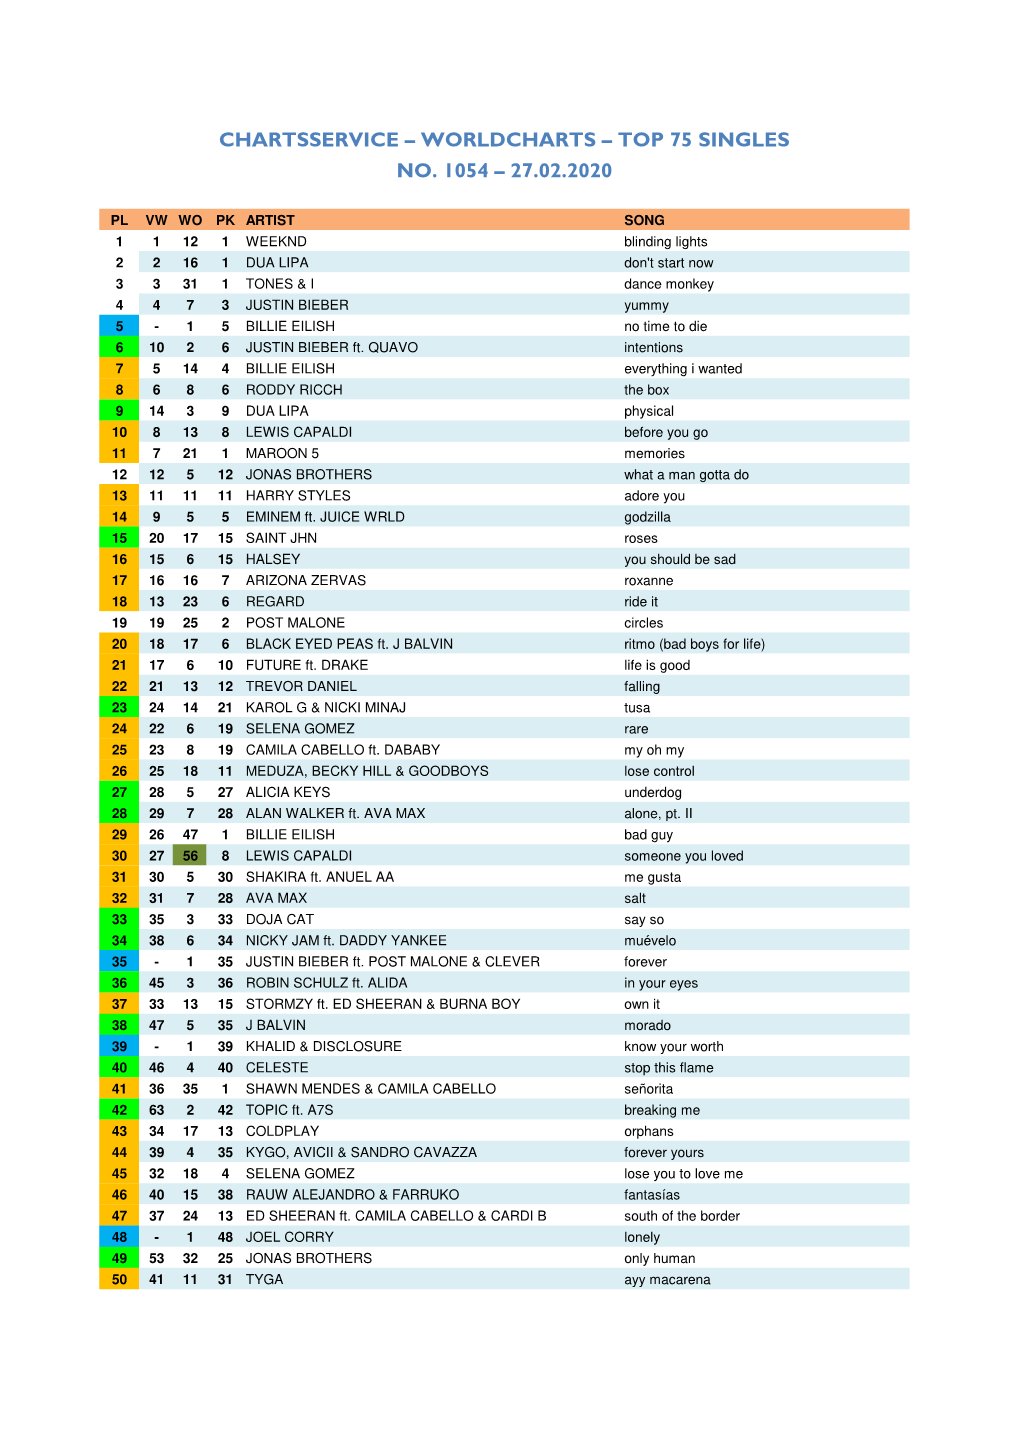 Worldcharts TOP 75 + Album TOP 30 Vom 27.02.2020